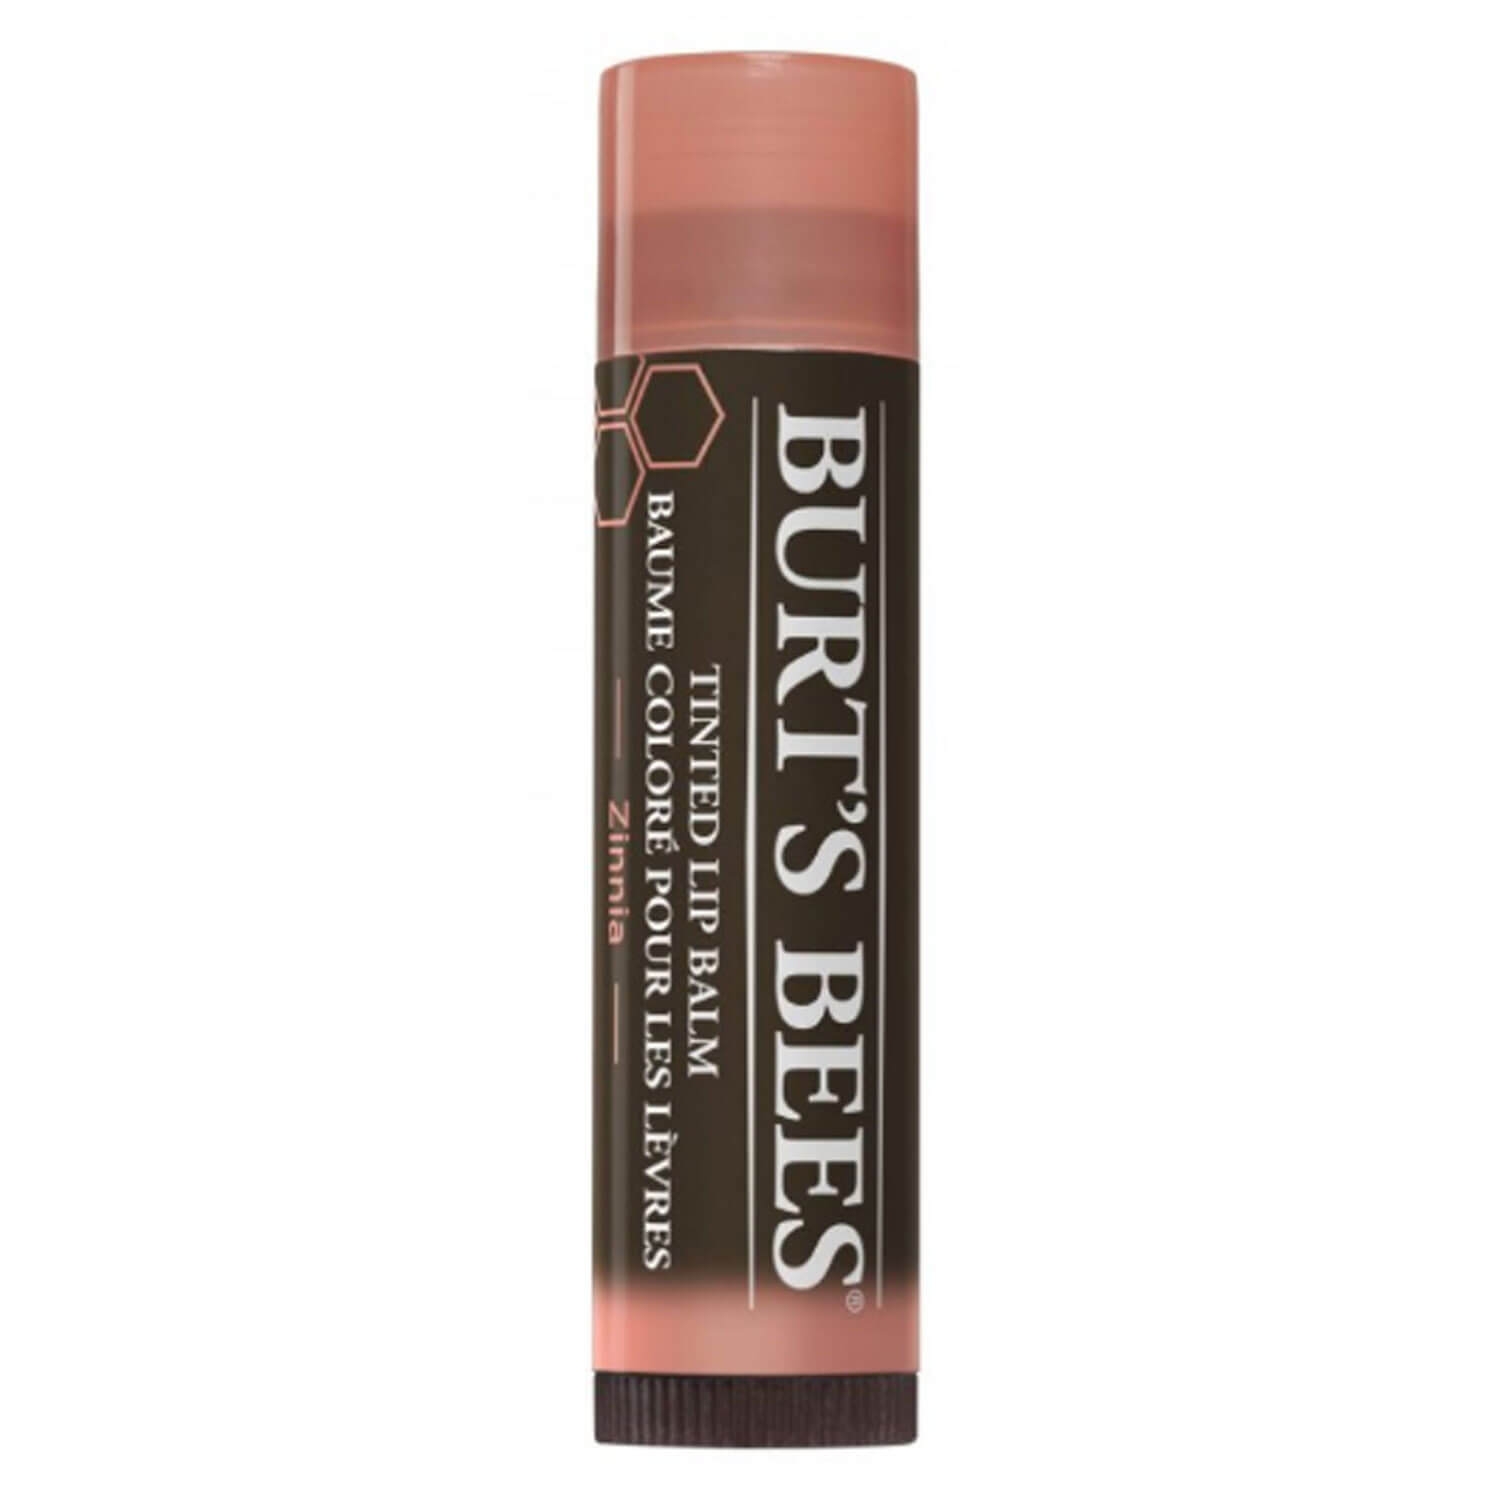 Produktbild von Burt's Bees - Tinted Lip Balm Zinnia